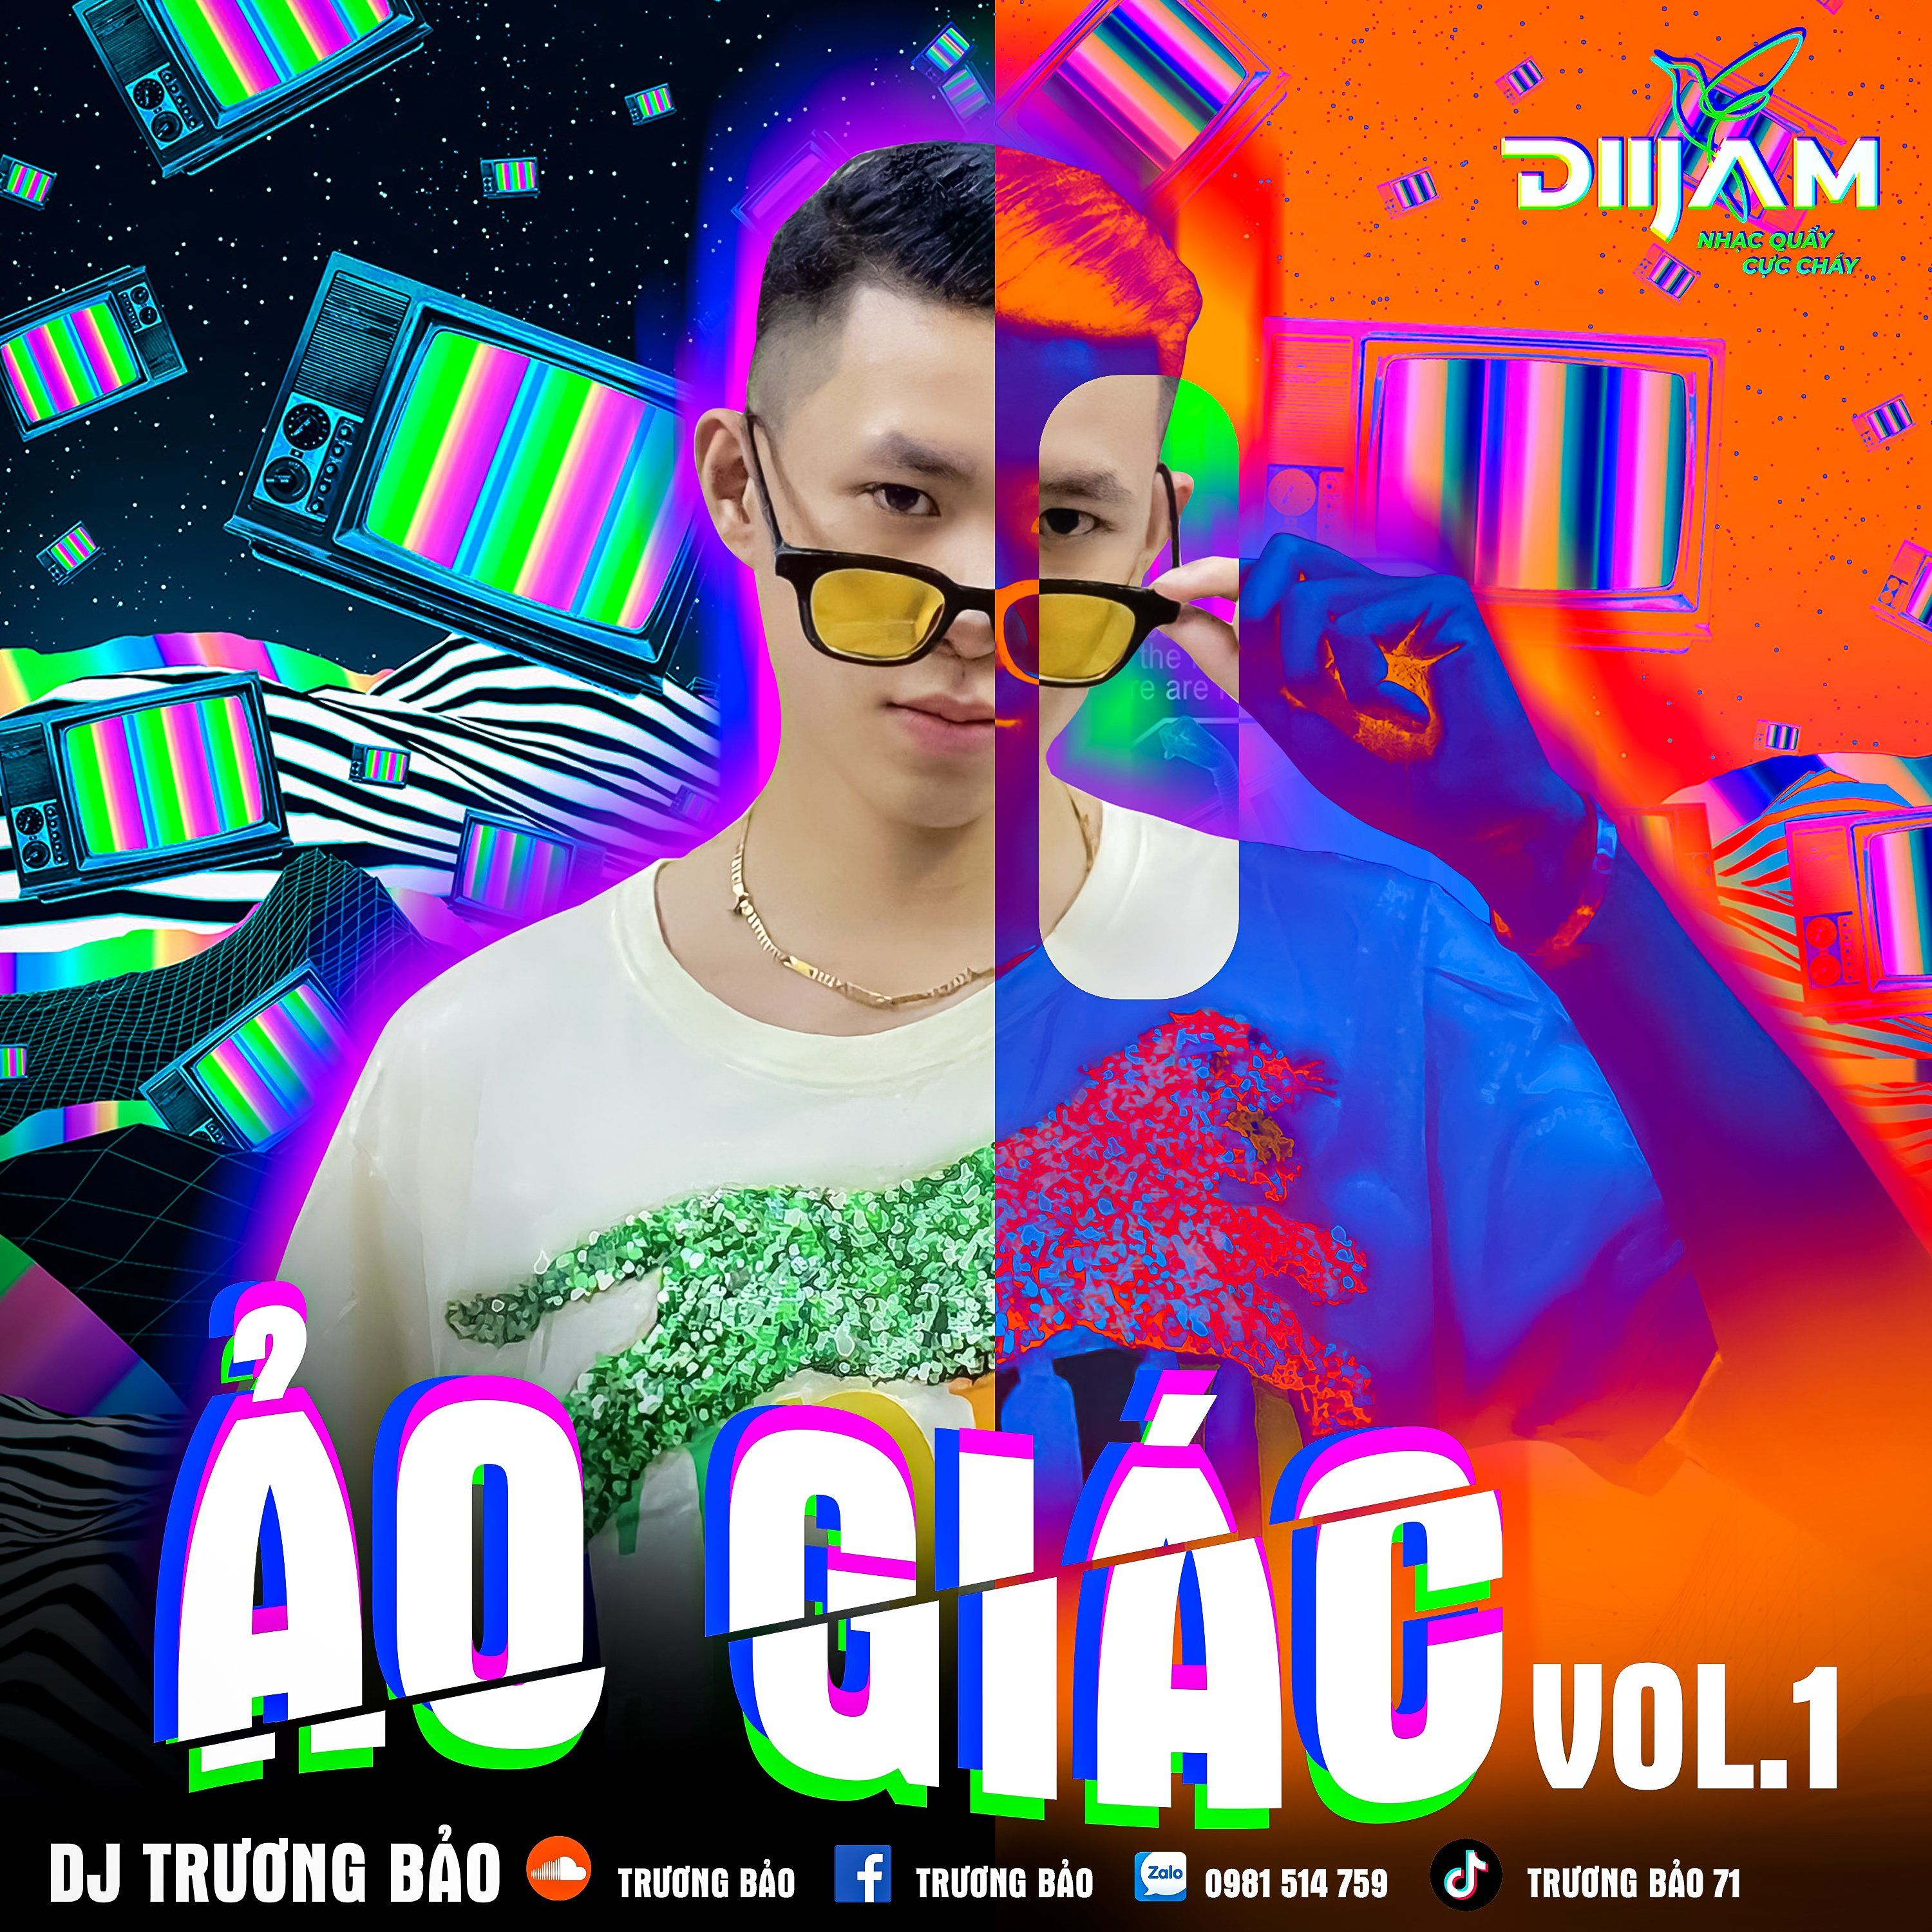 אראפקאפיע Ảo Giác Vol 1 - DJ Trương Bảo (Nonstop Diijam)